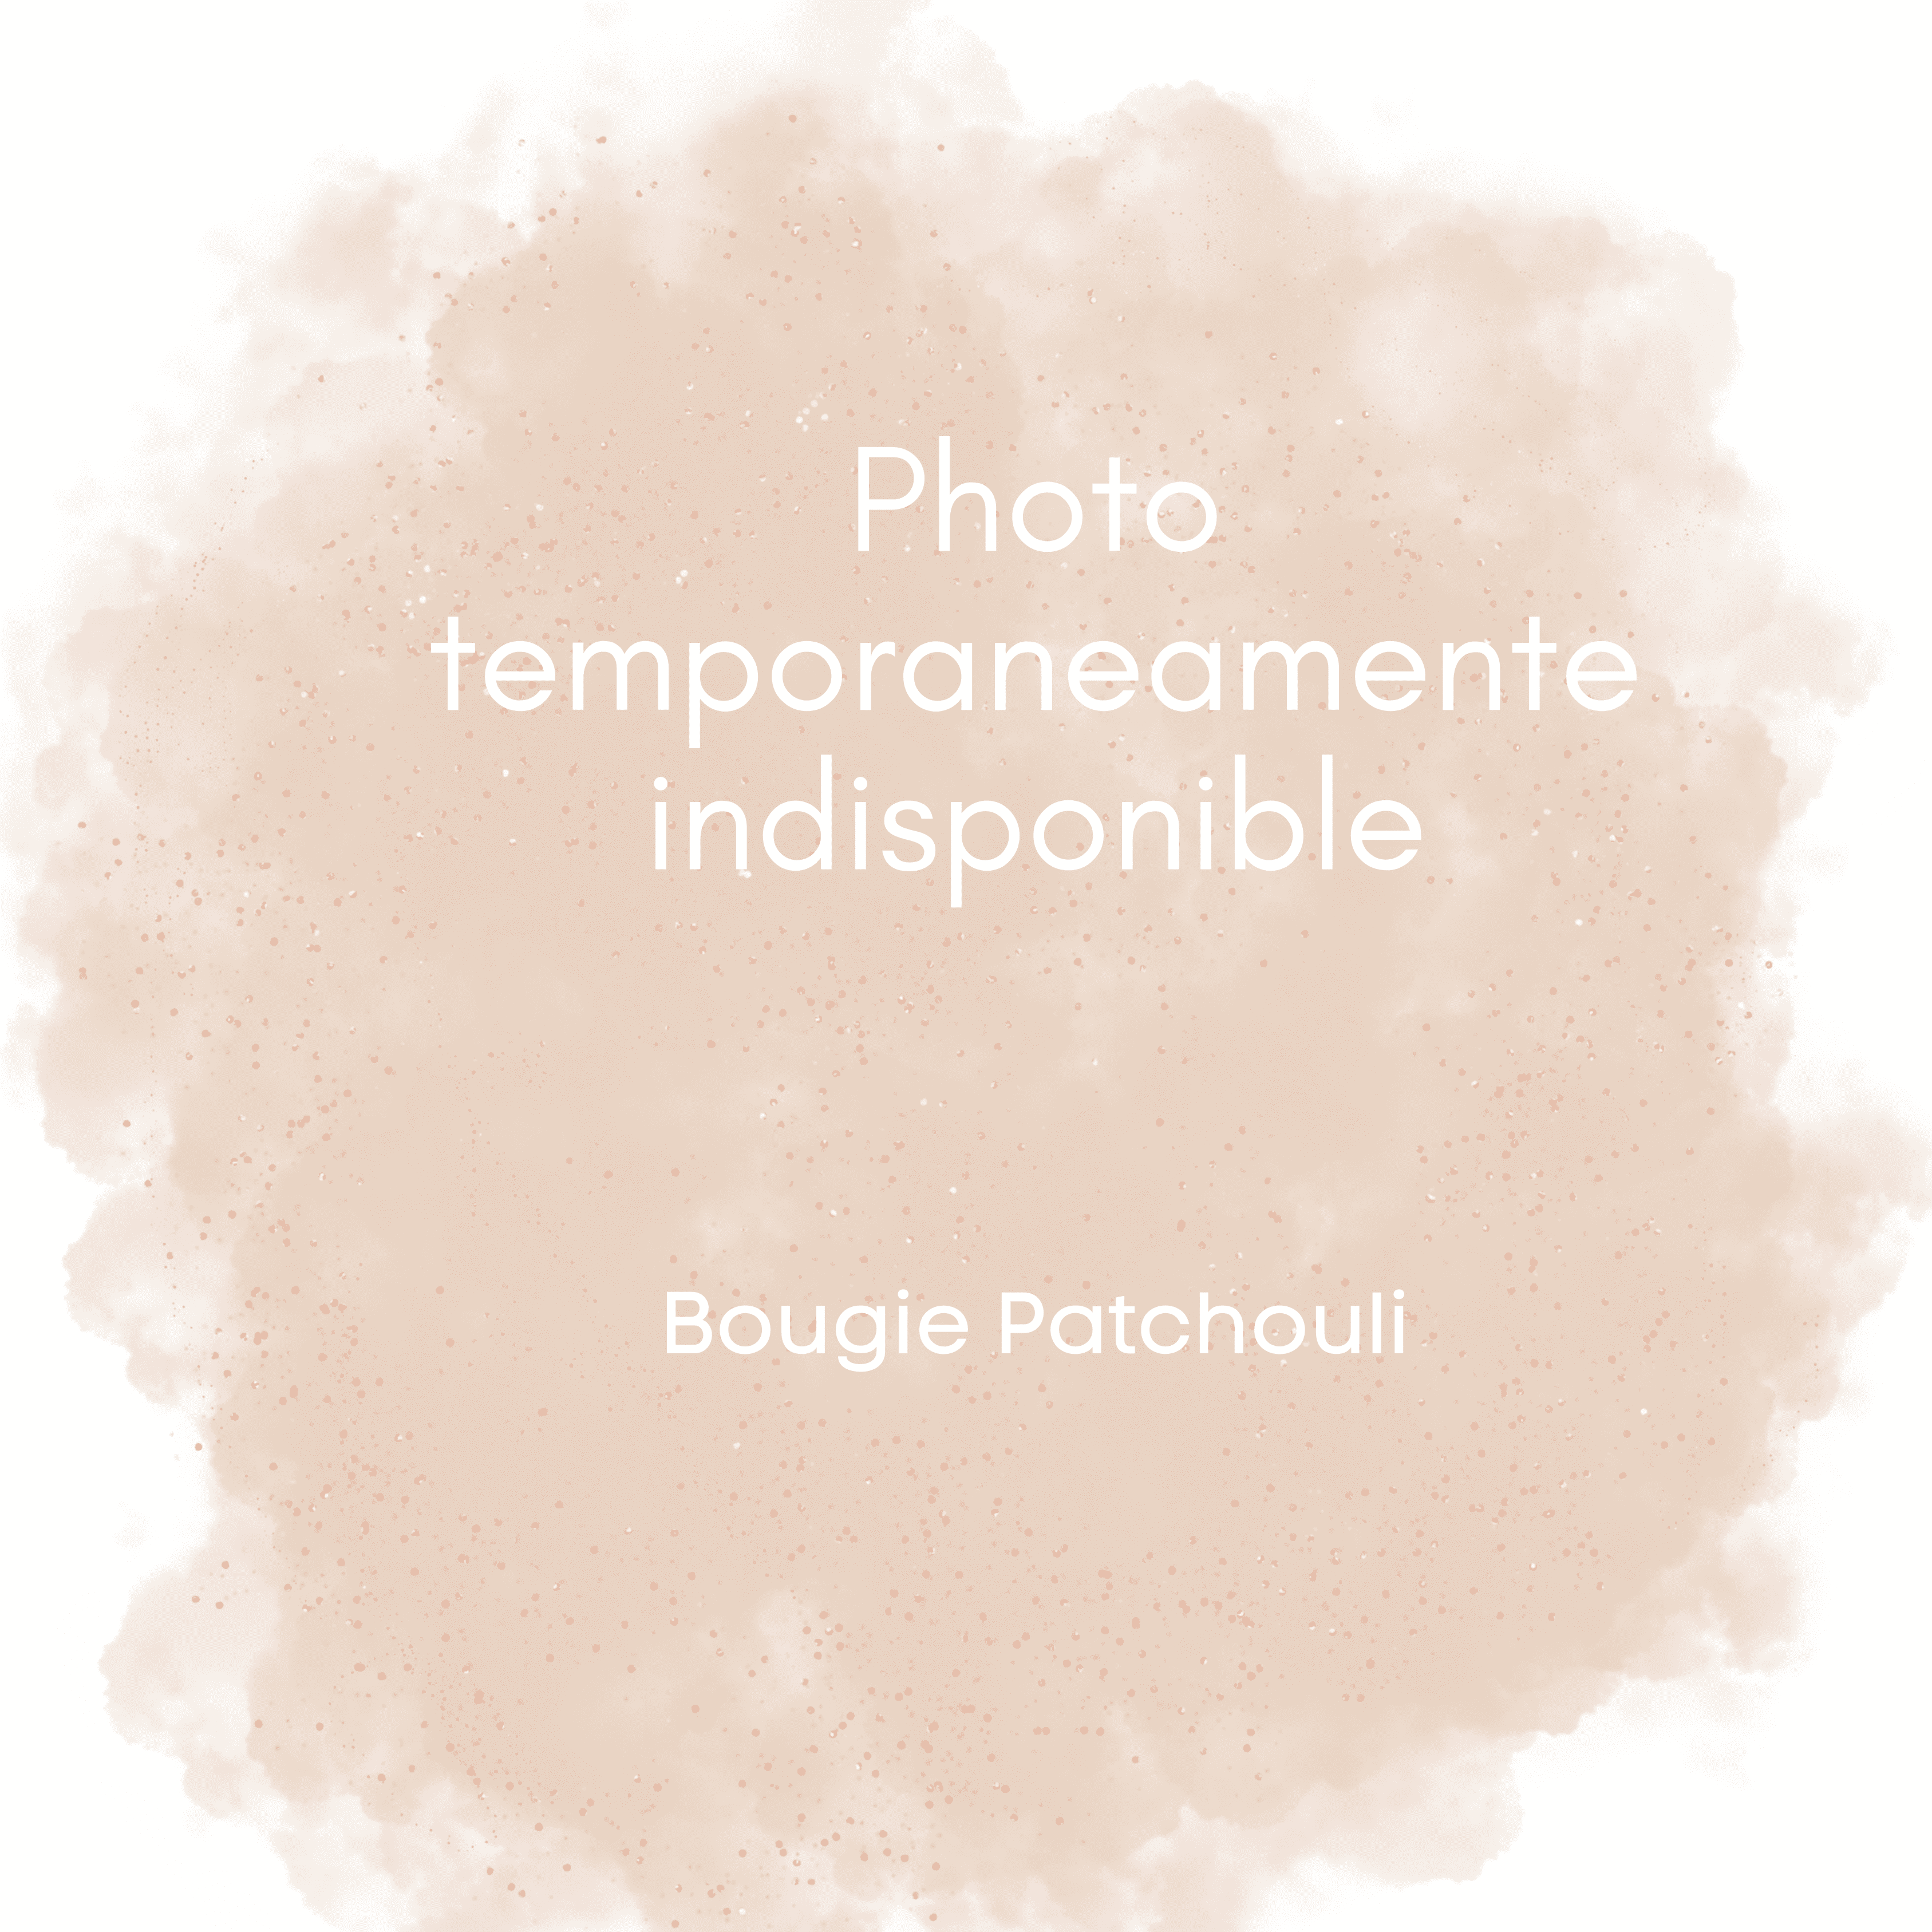 Bougie Patchouli